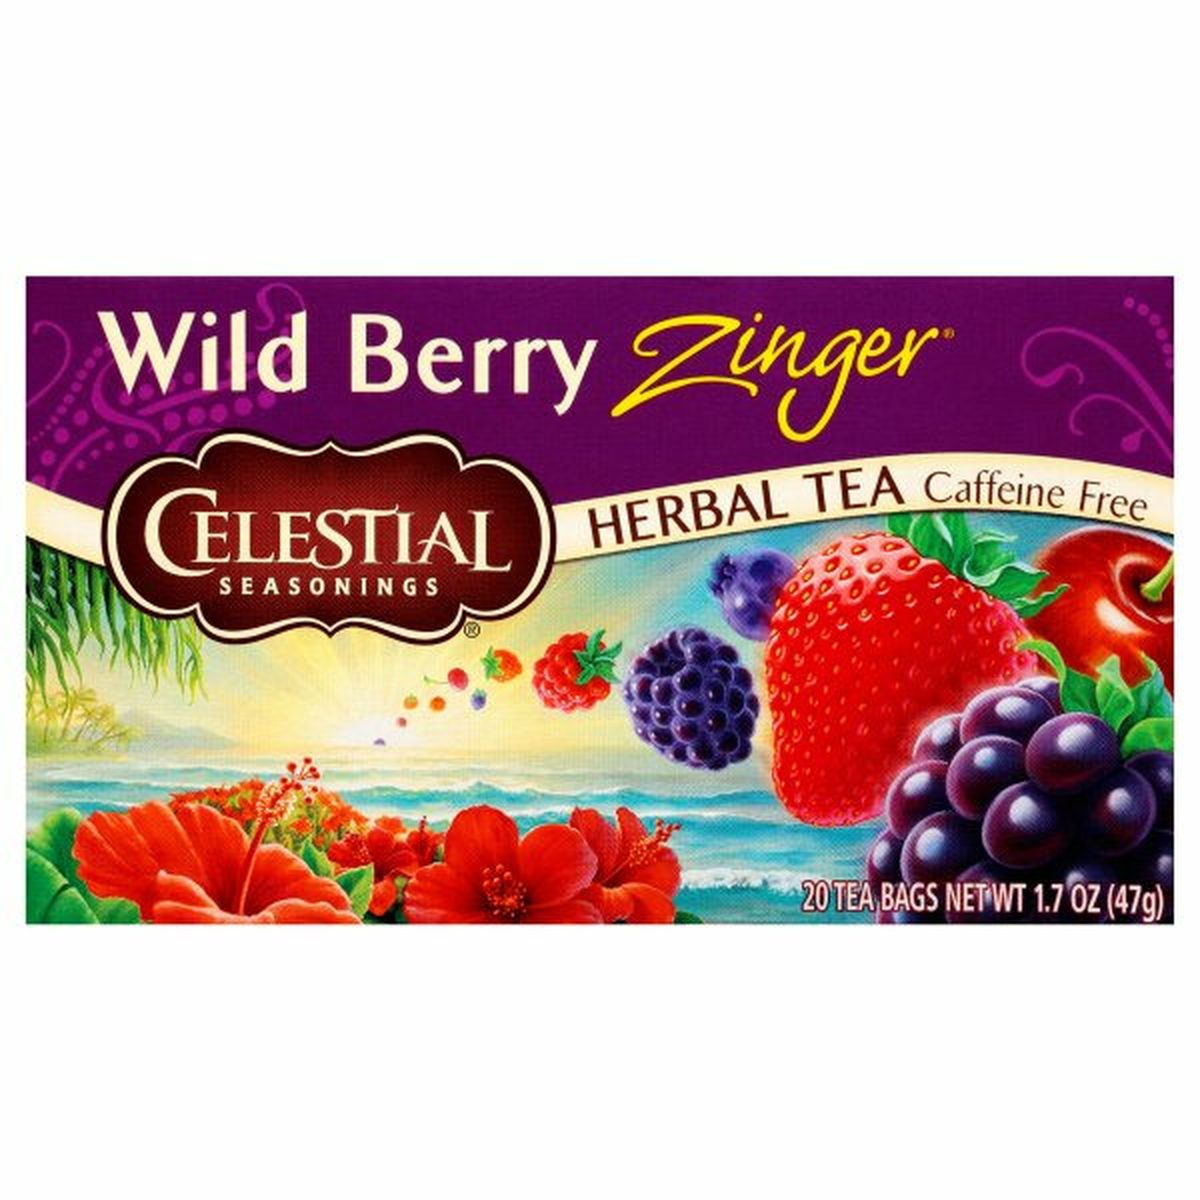 Calories in Celestial Seasonings Herbal Tea, Caffeine Free, Wild Berry Zinger, Tea Bags